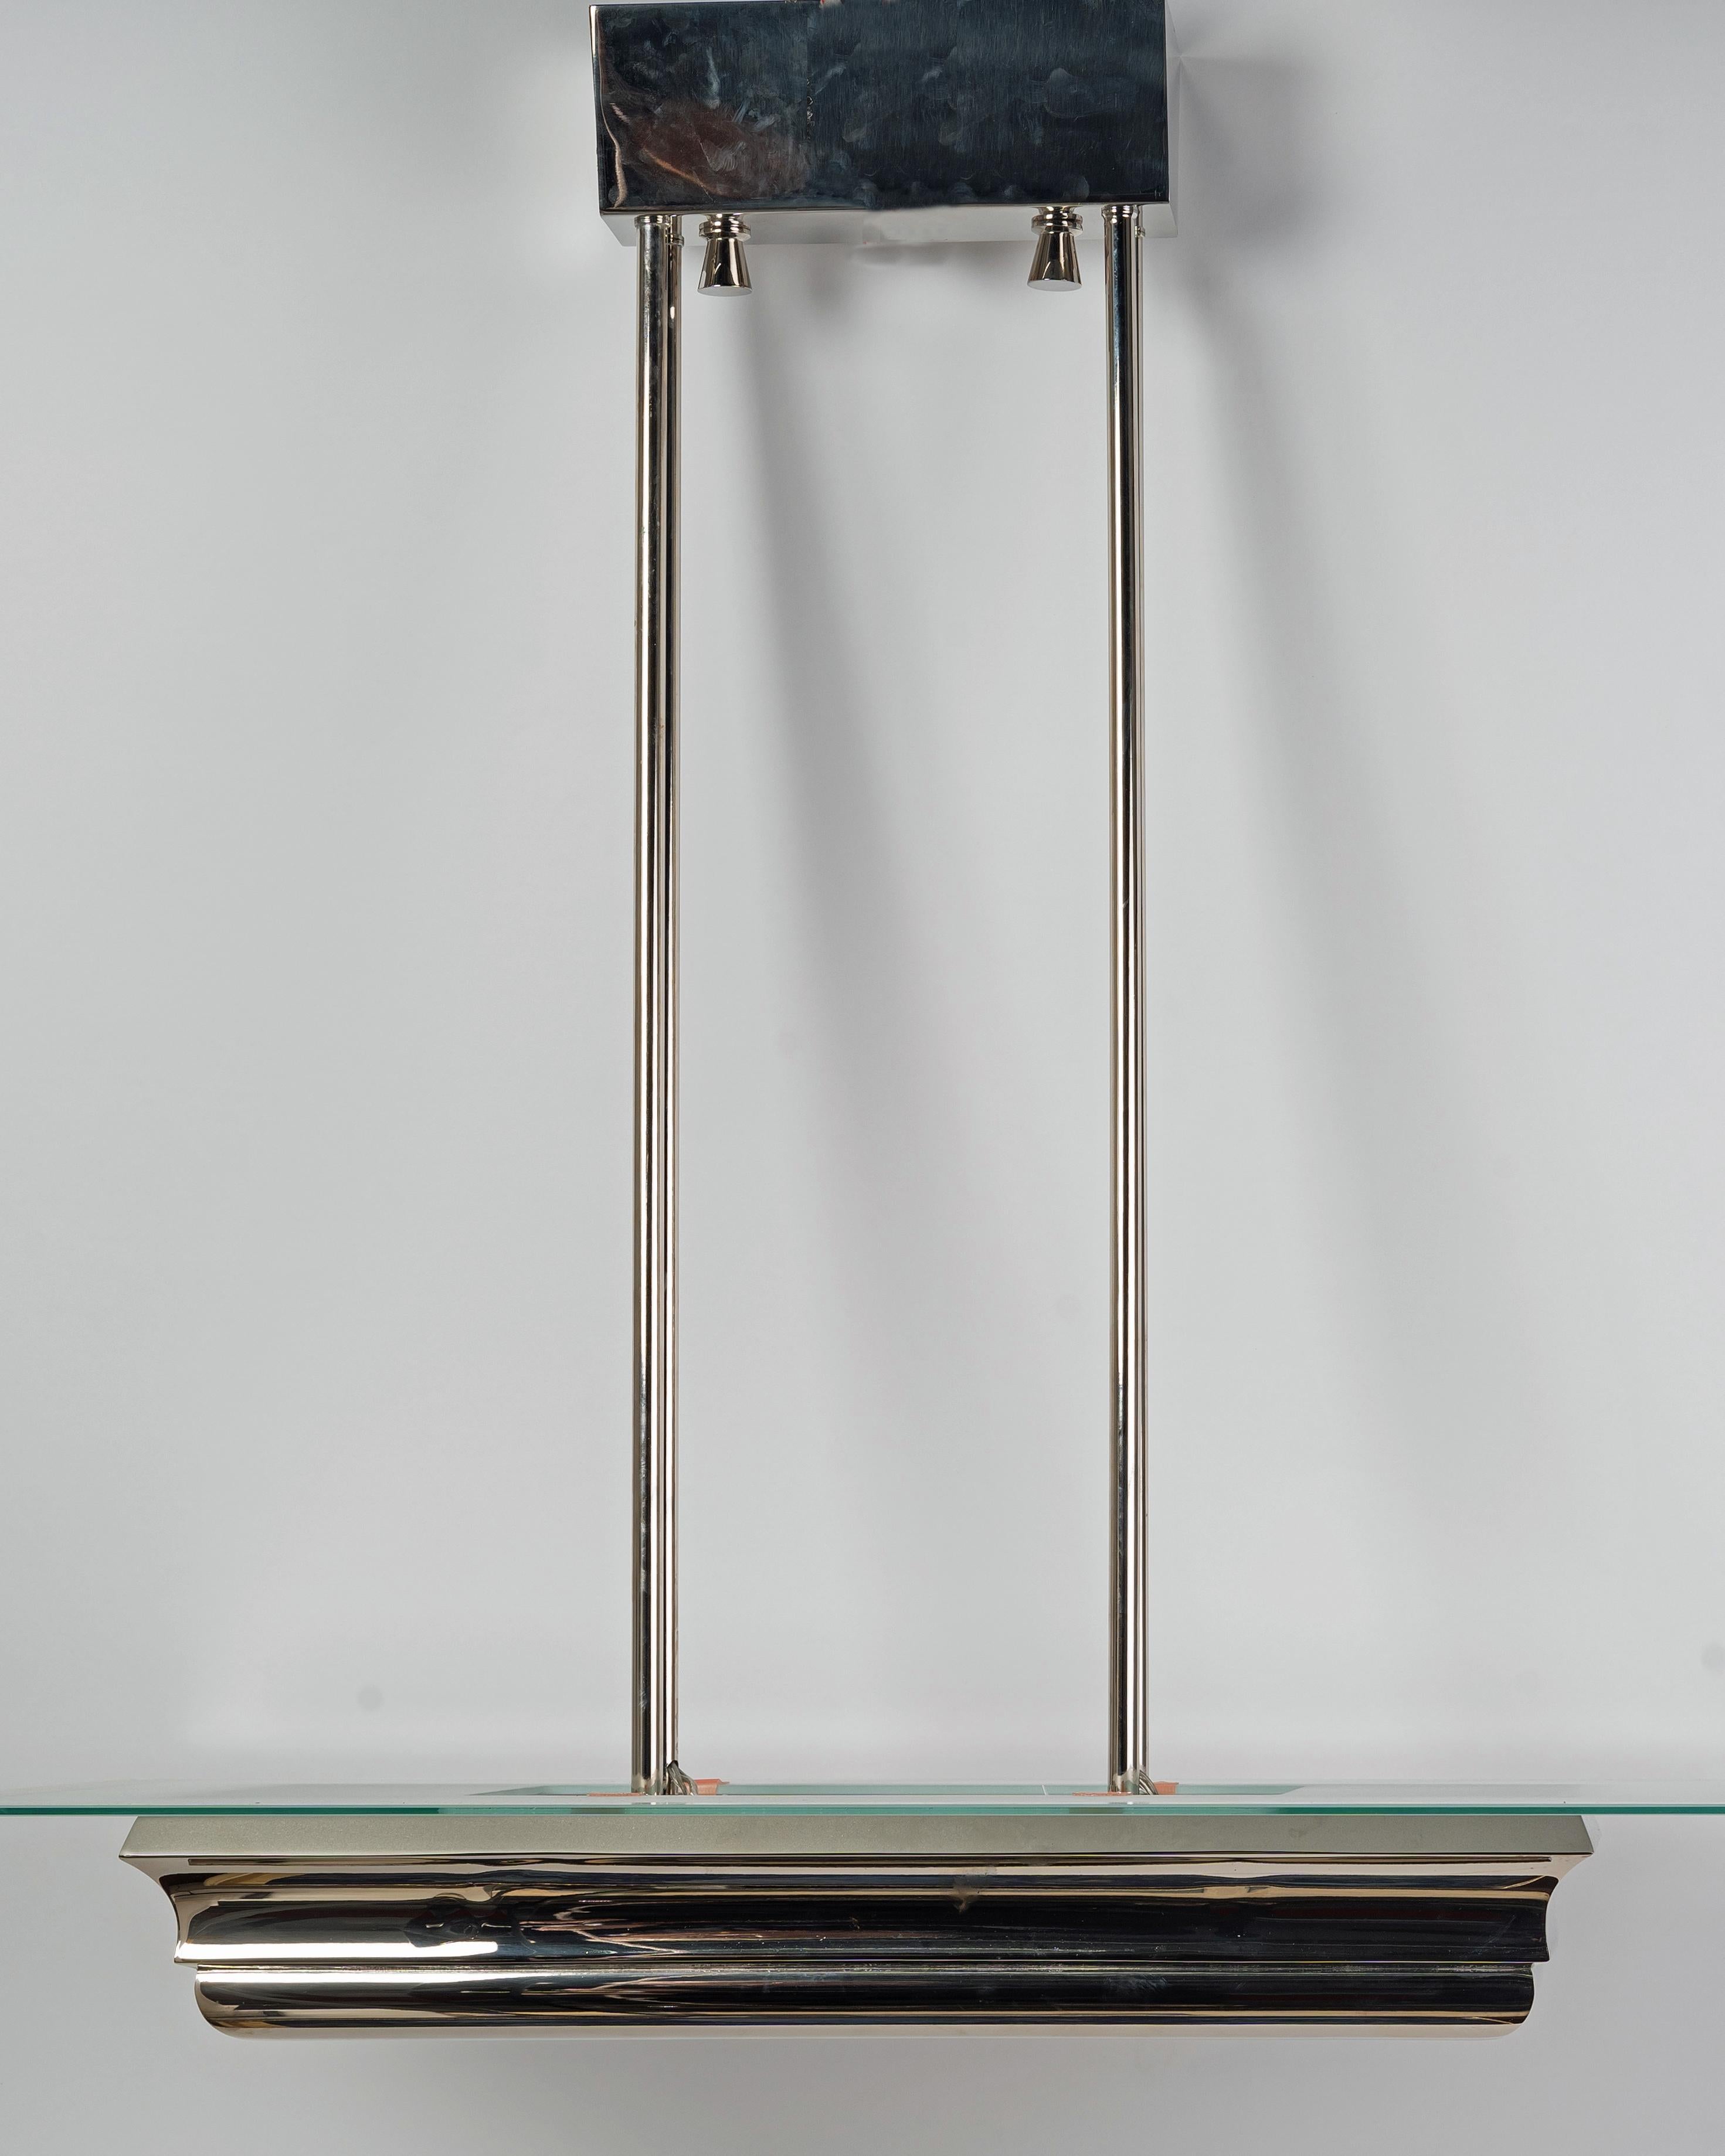 Lustre Art Déco en bronze nickelé datant des années 1930 par l'Atelier Petitot.

La partie inférieure du corps du lustre est constituée d'un cadre rectangulaire nickelé. 

Il y a une plaque de verre sablé en bas et une plaque de verre sablé avec des